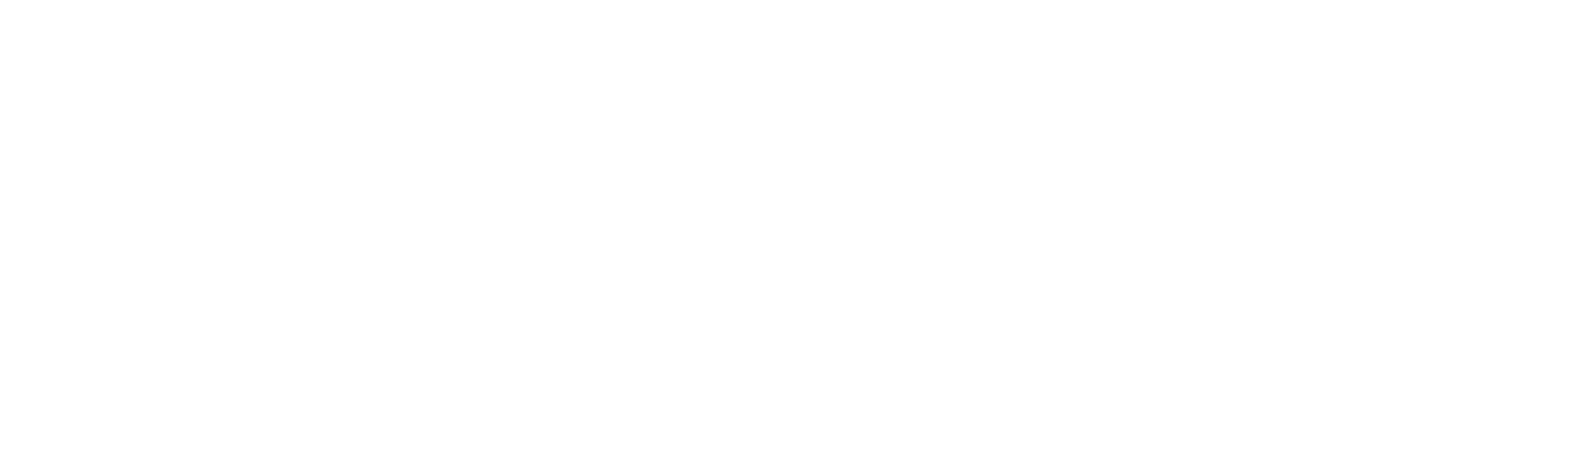 Progyny logo large for dark backgrounds (transparent PNG)